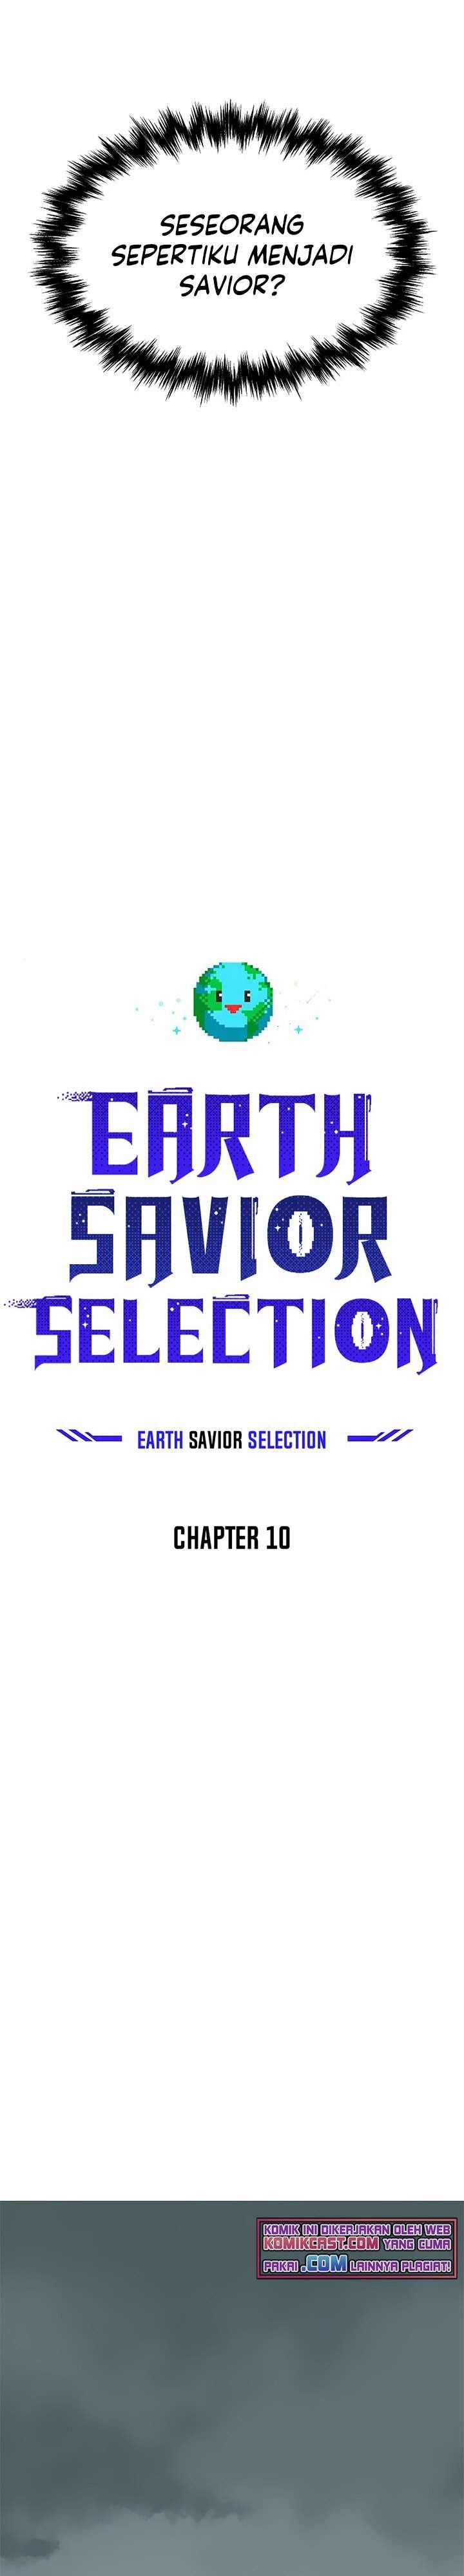 The Earth Savior Selection Chapter 10